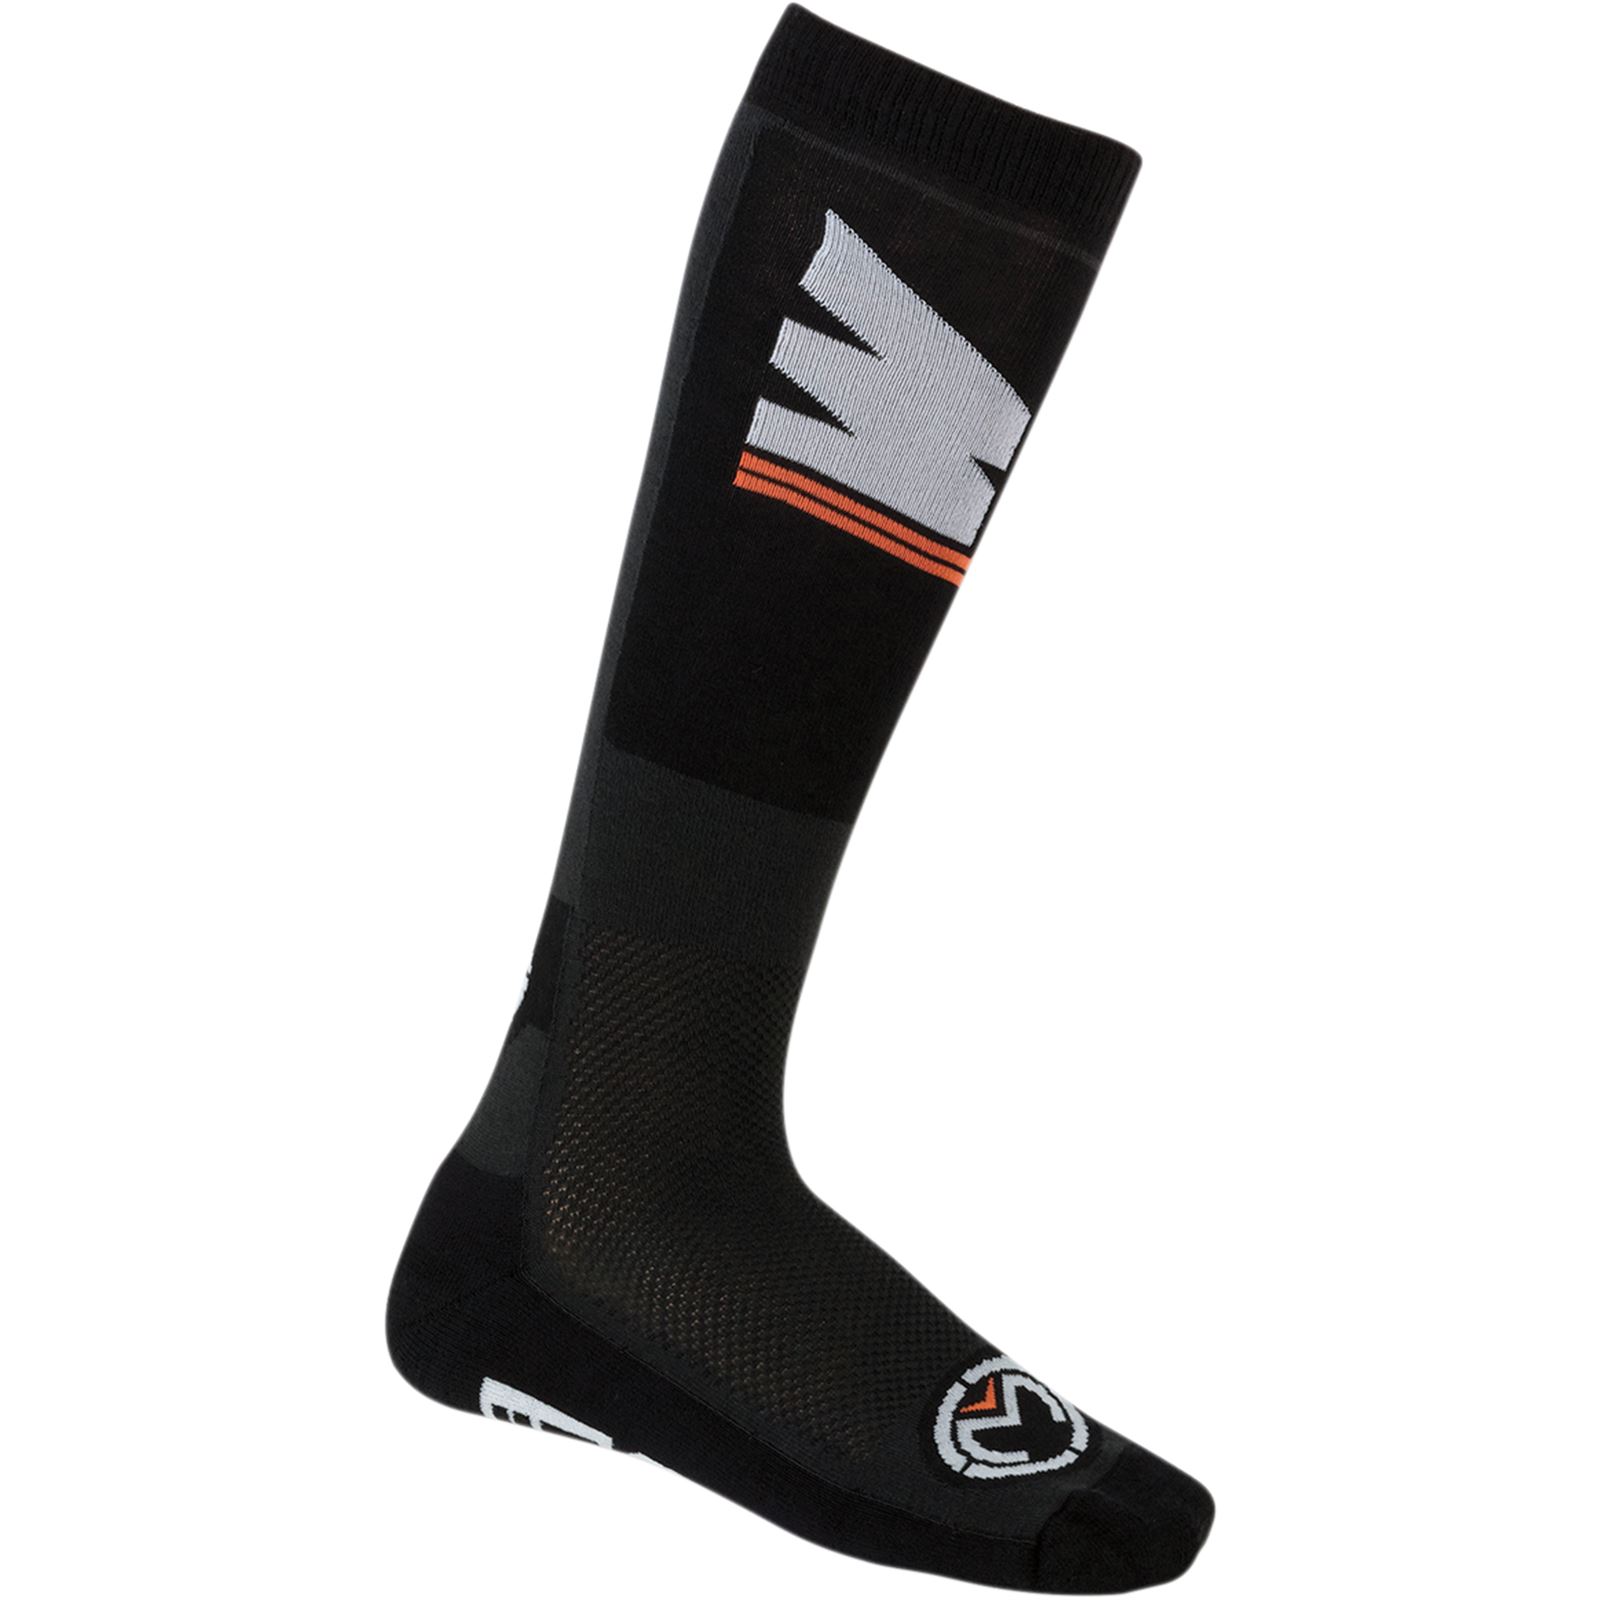 Moose Racing M1™ Socks - Black - Large/X-Large